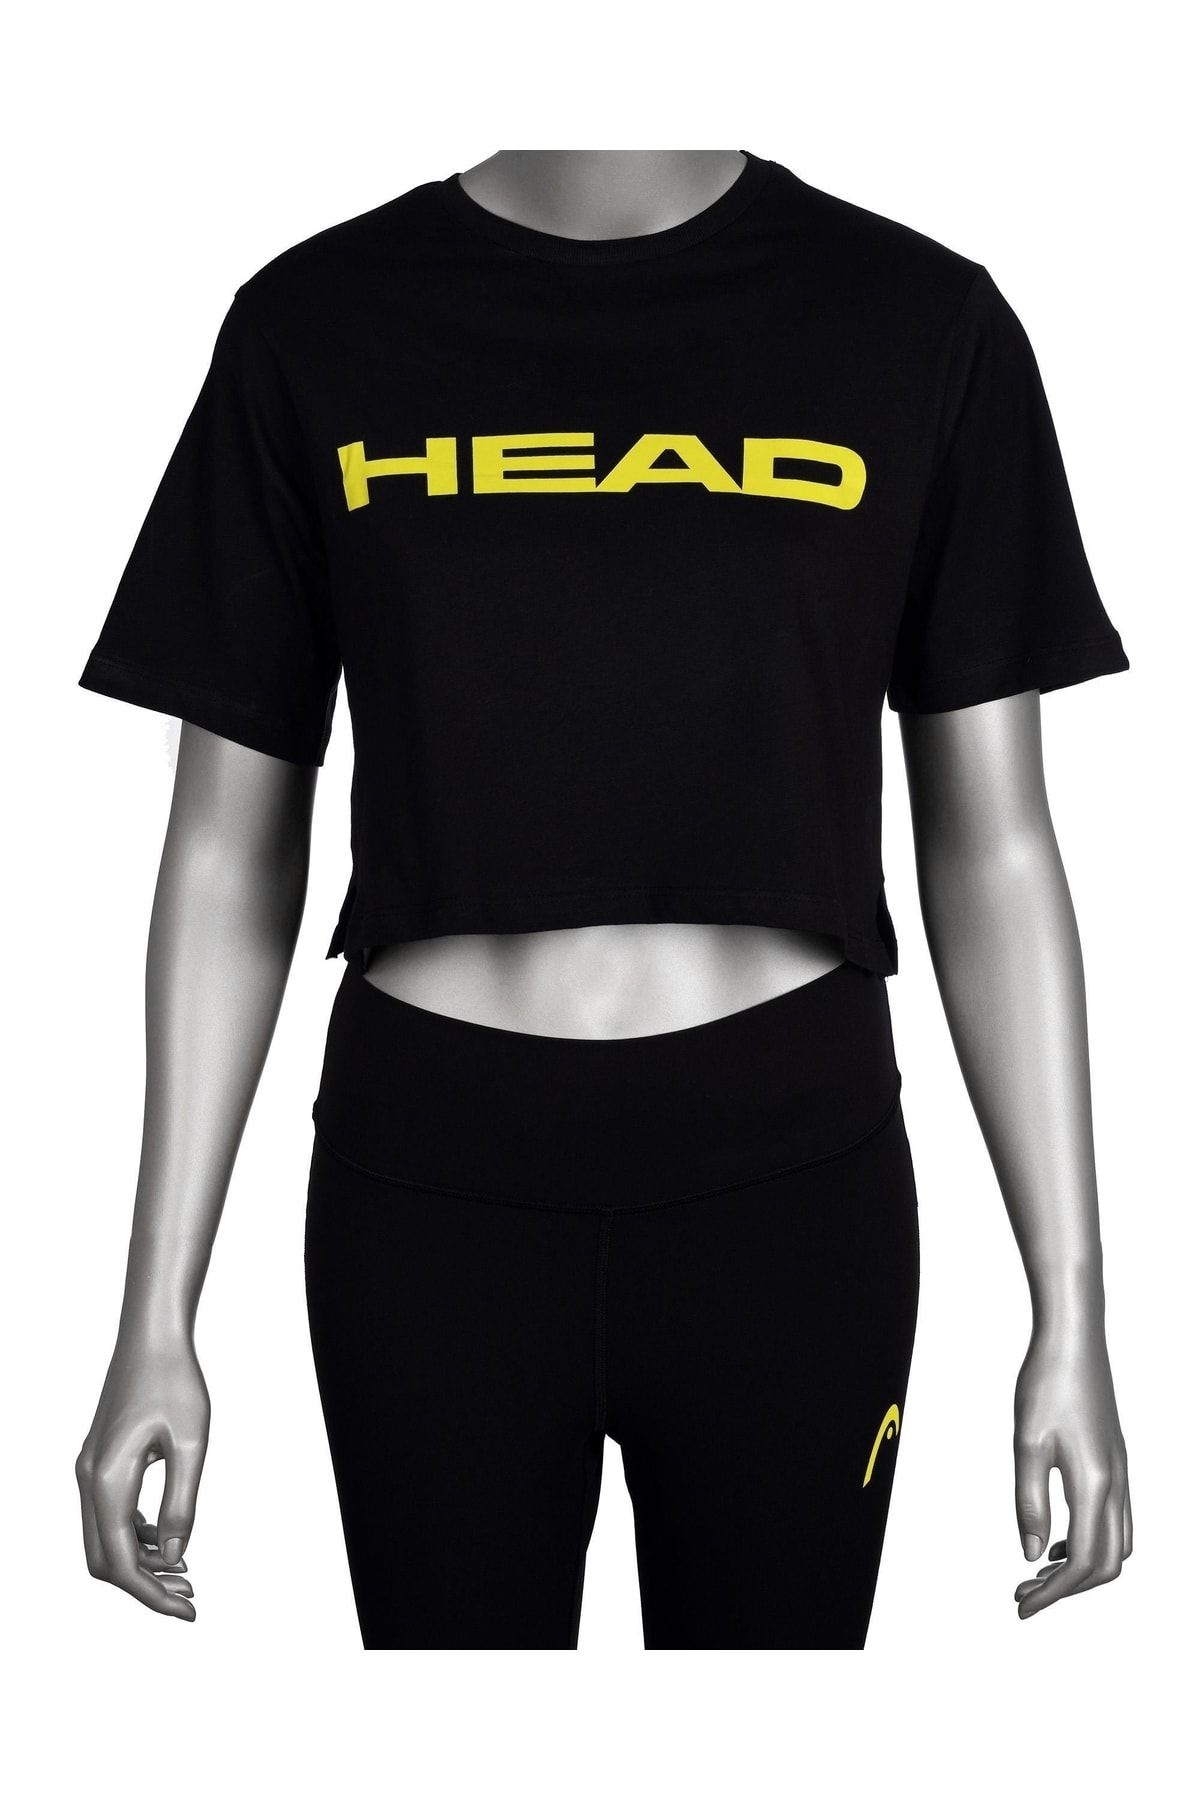 Head Kadın Siyah Logo Baskılı Pamuklu Bisiklet Yaka Spor Şık Croptop Spor T-shirt Tenis Tişört